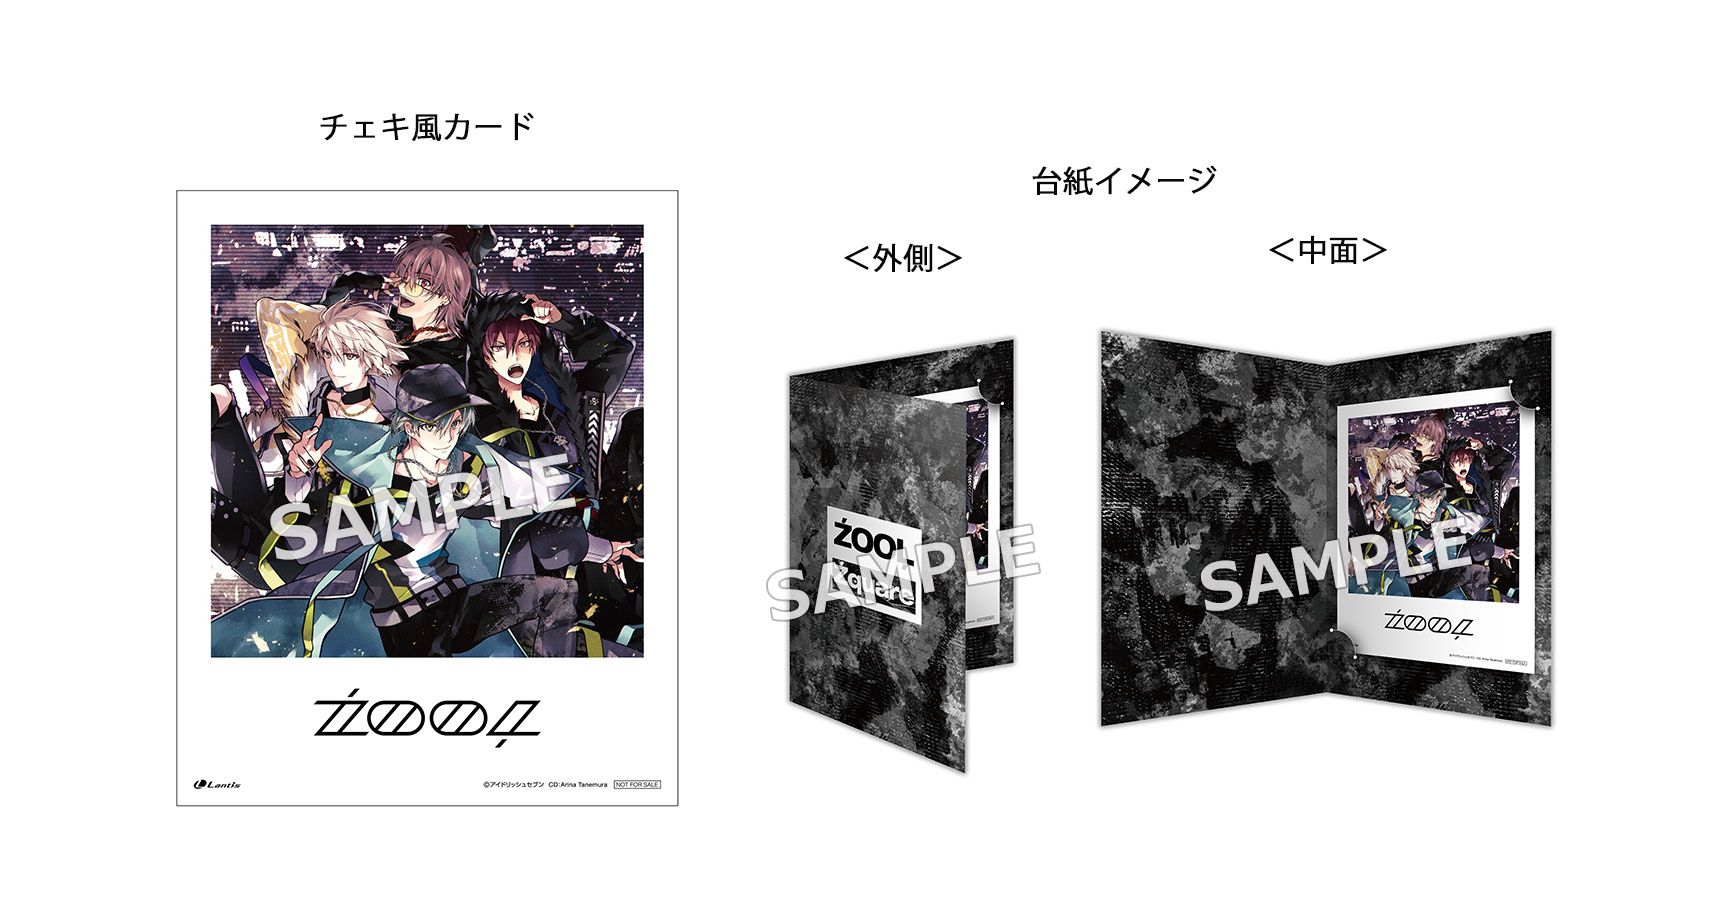 楽天ブックス: ZOOL 2nd Album ”Zquare”【初回限定盤B CD＋グッズ 